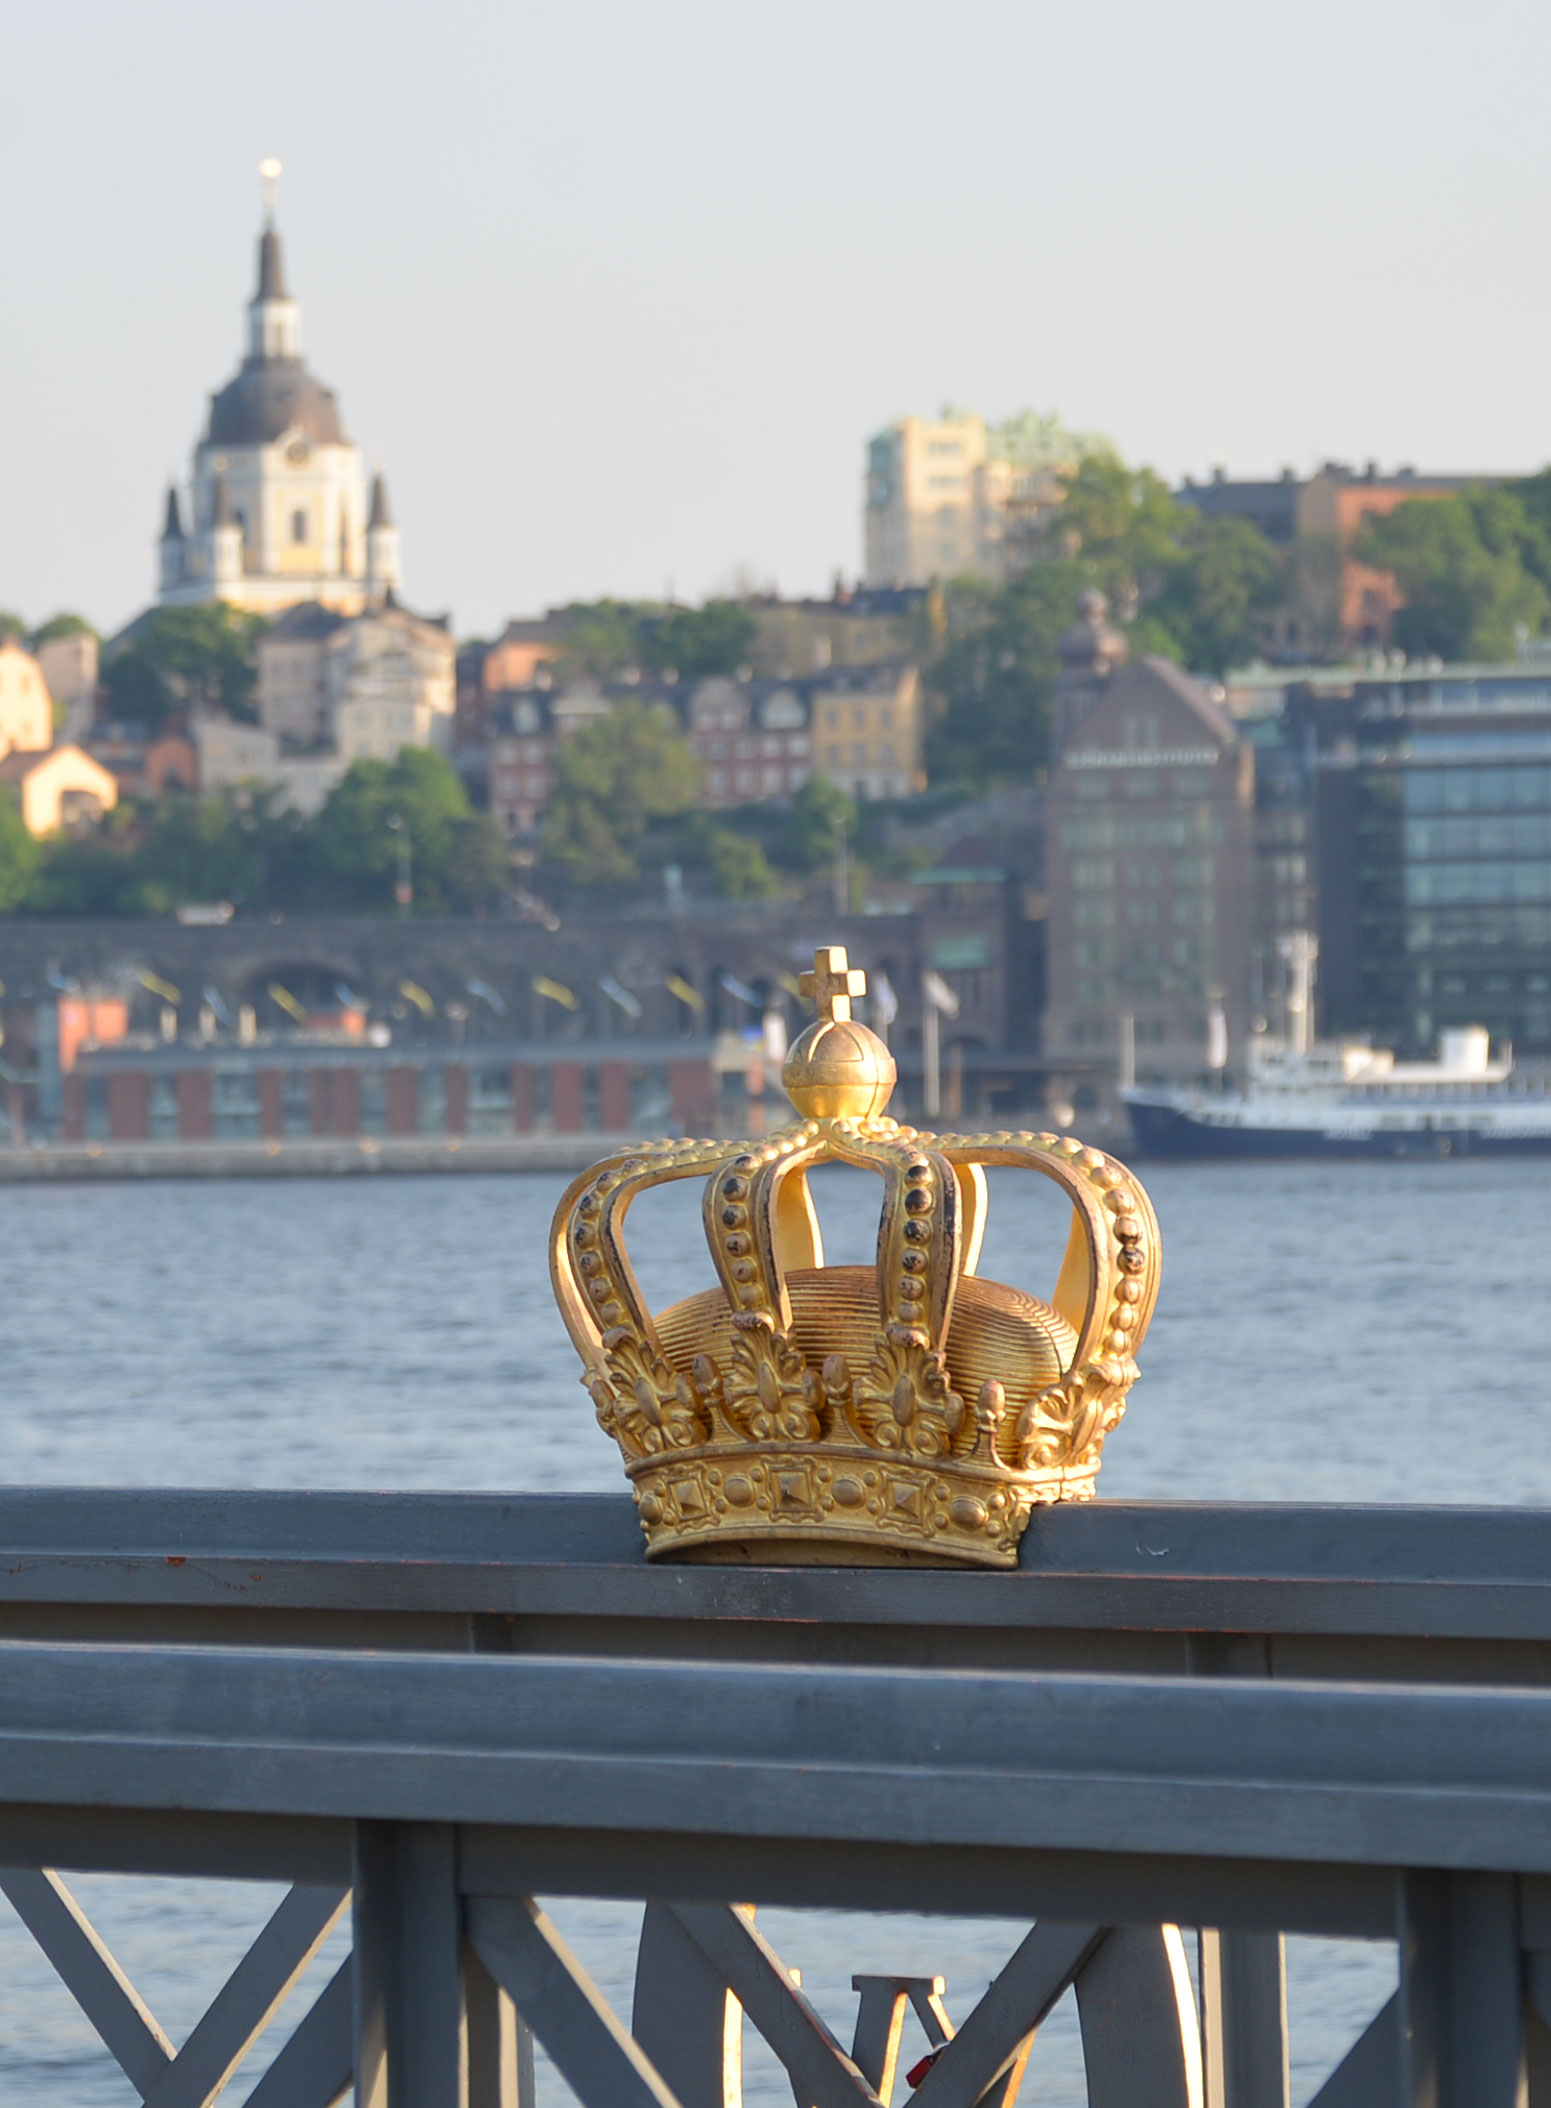 北欧フィーカ スウェーデン ストックホルムの旅 王冠の橋を渡って シェップスホルメン島へ Scandinavian Fika